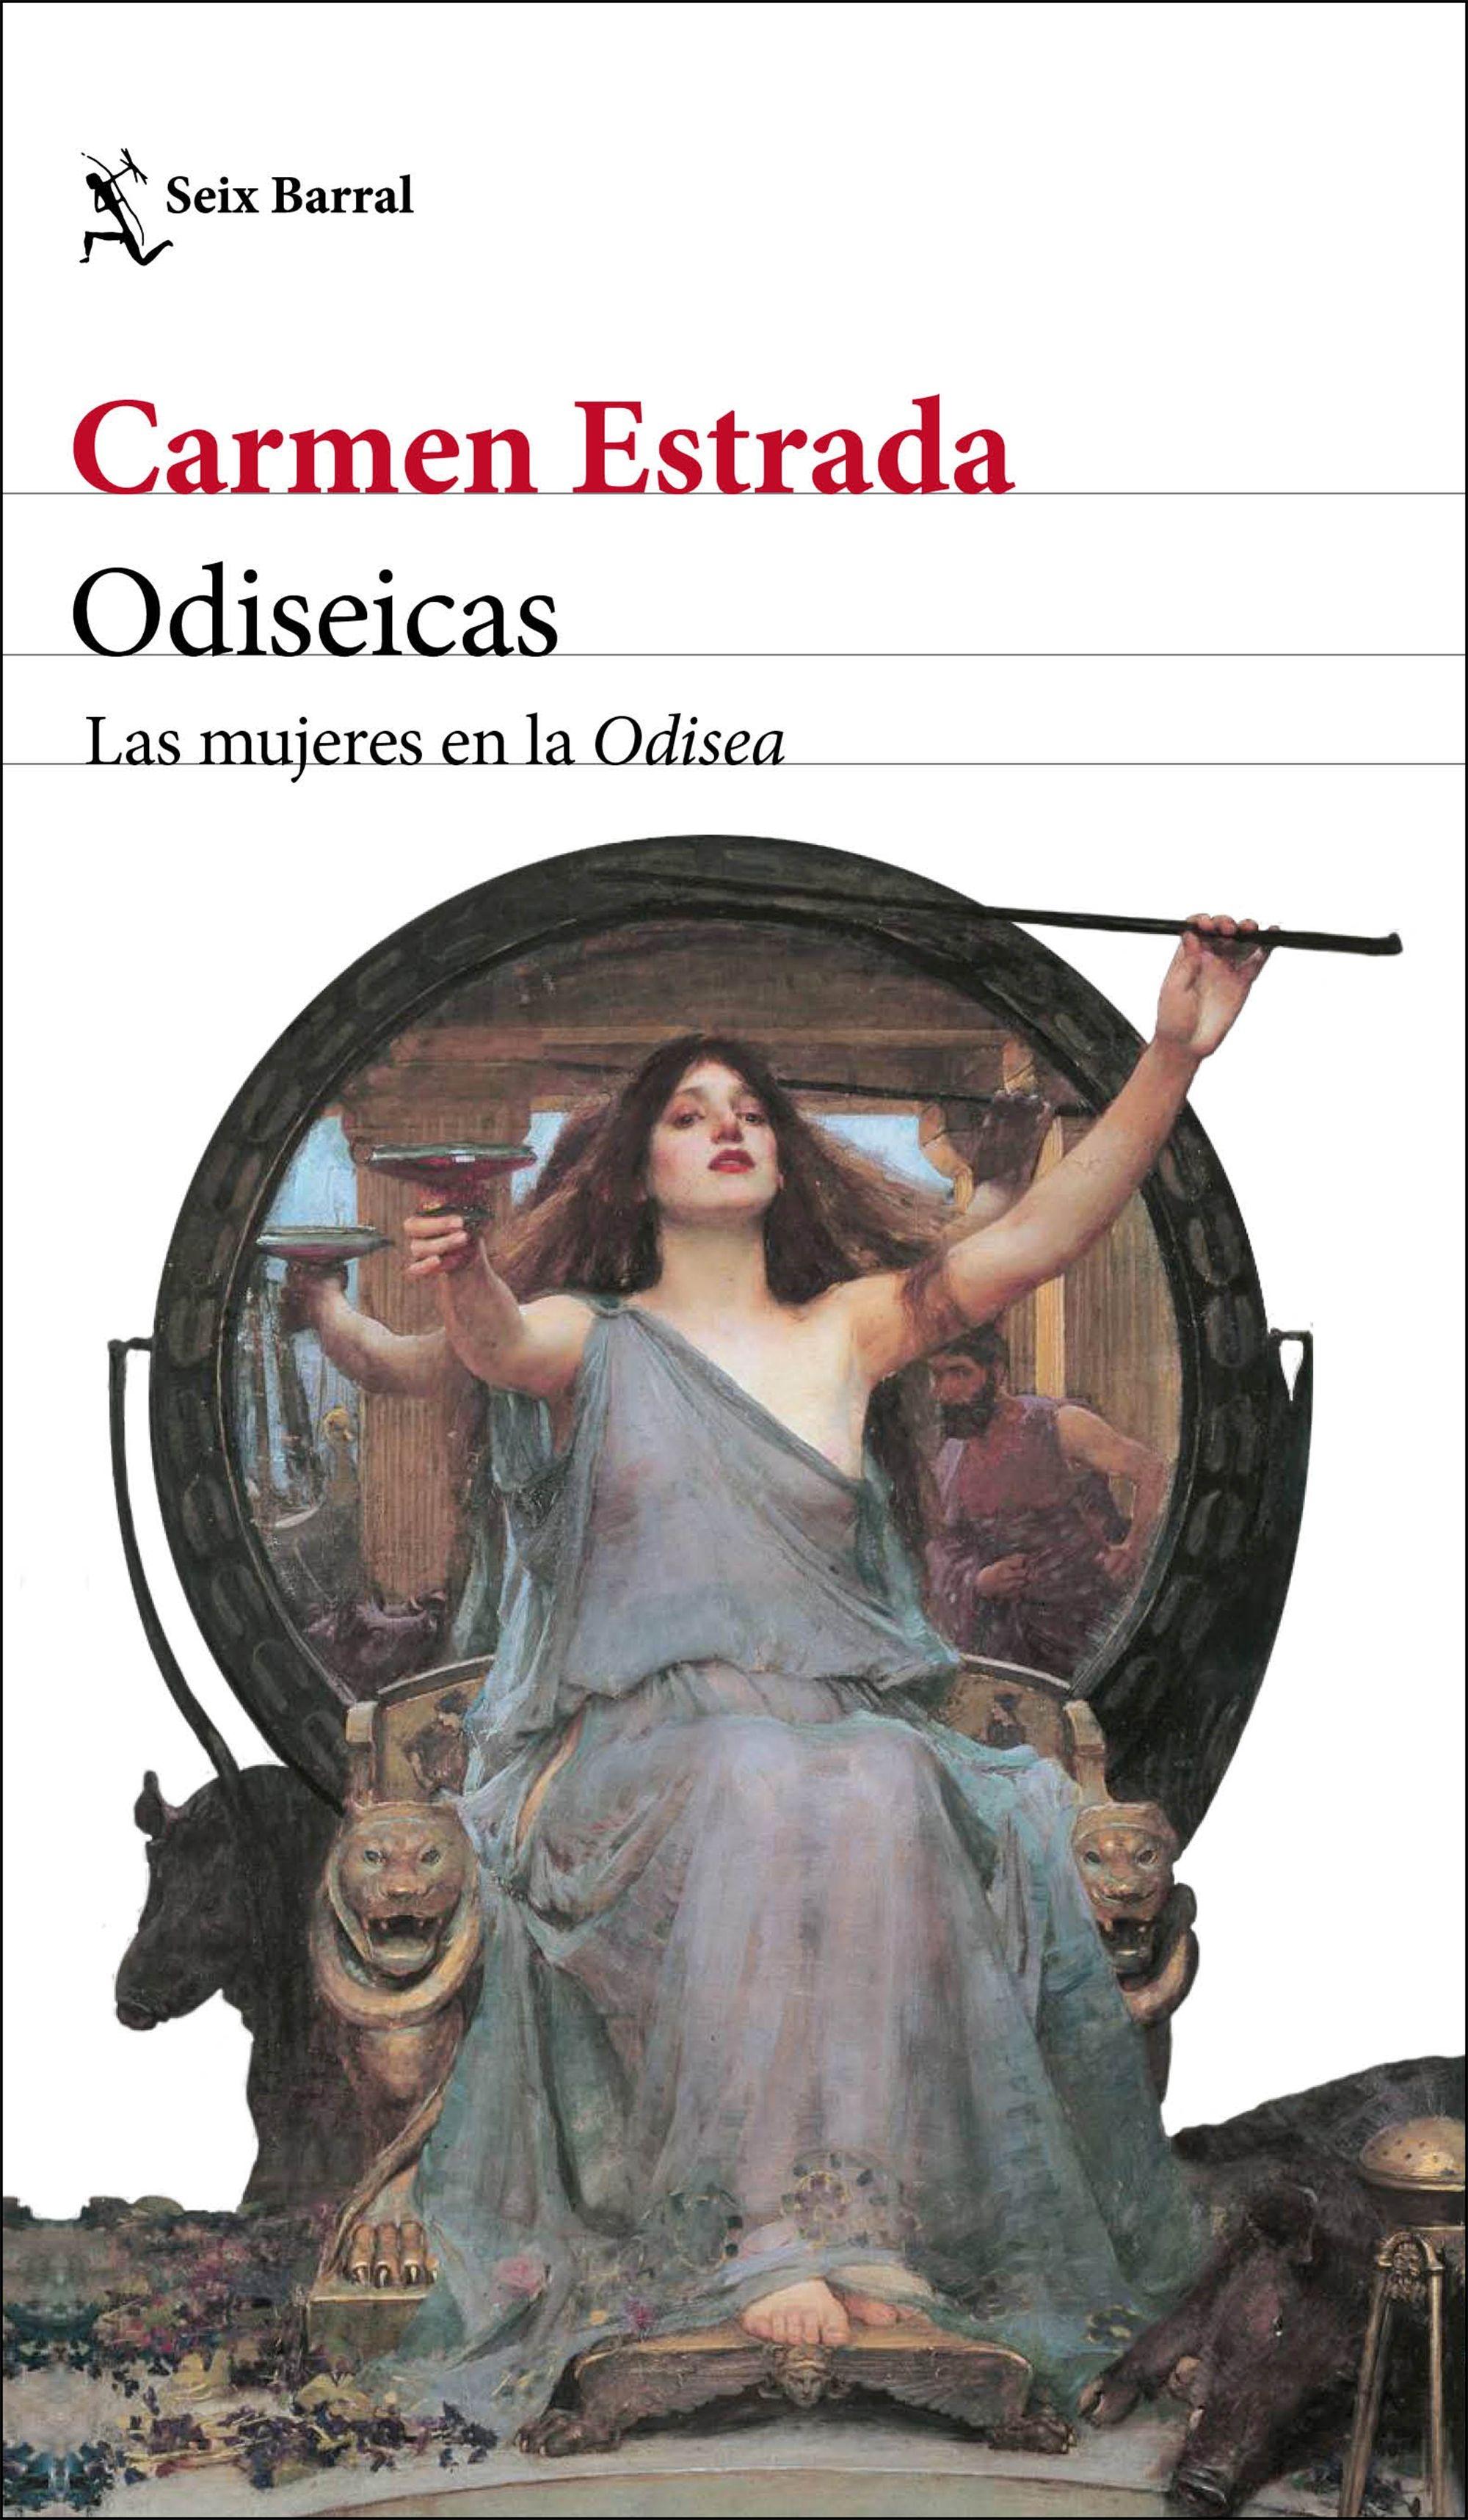 Odiseicas "Las Mujeres en la Odisea"